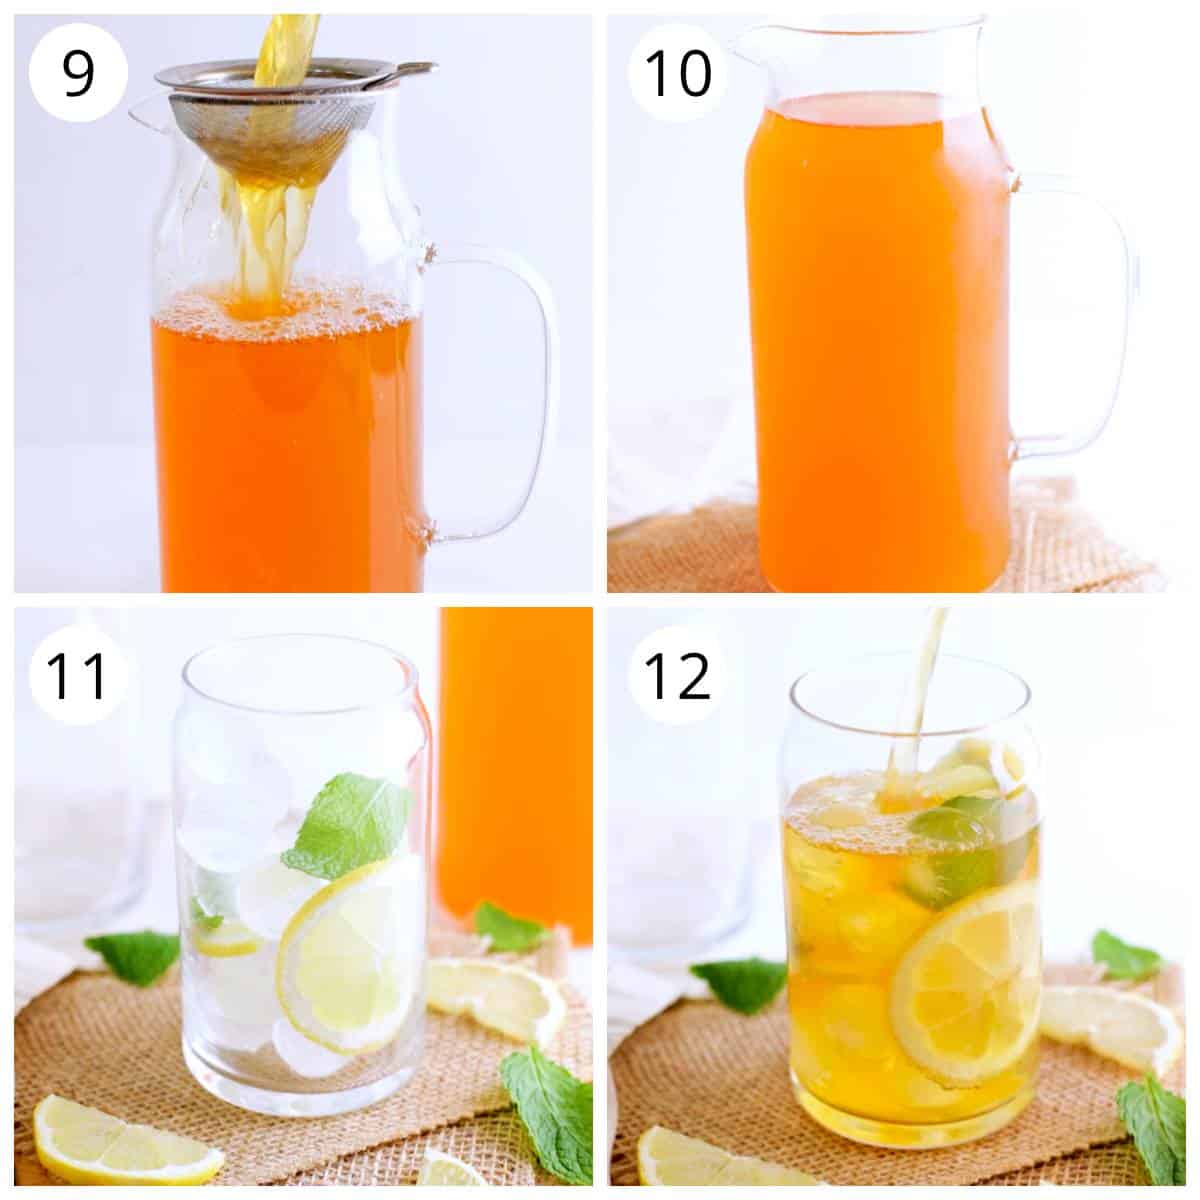 Steps for serving lemon iced tea  